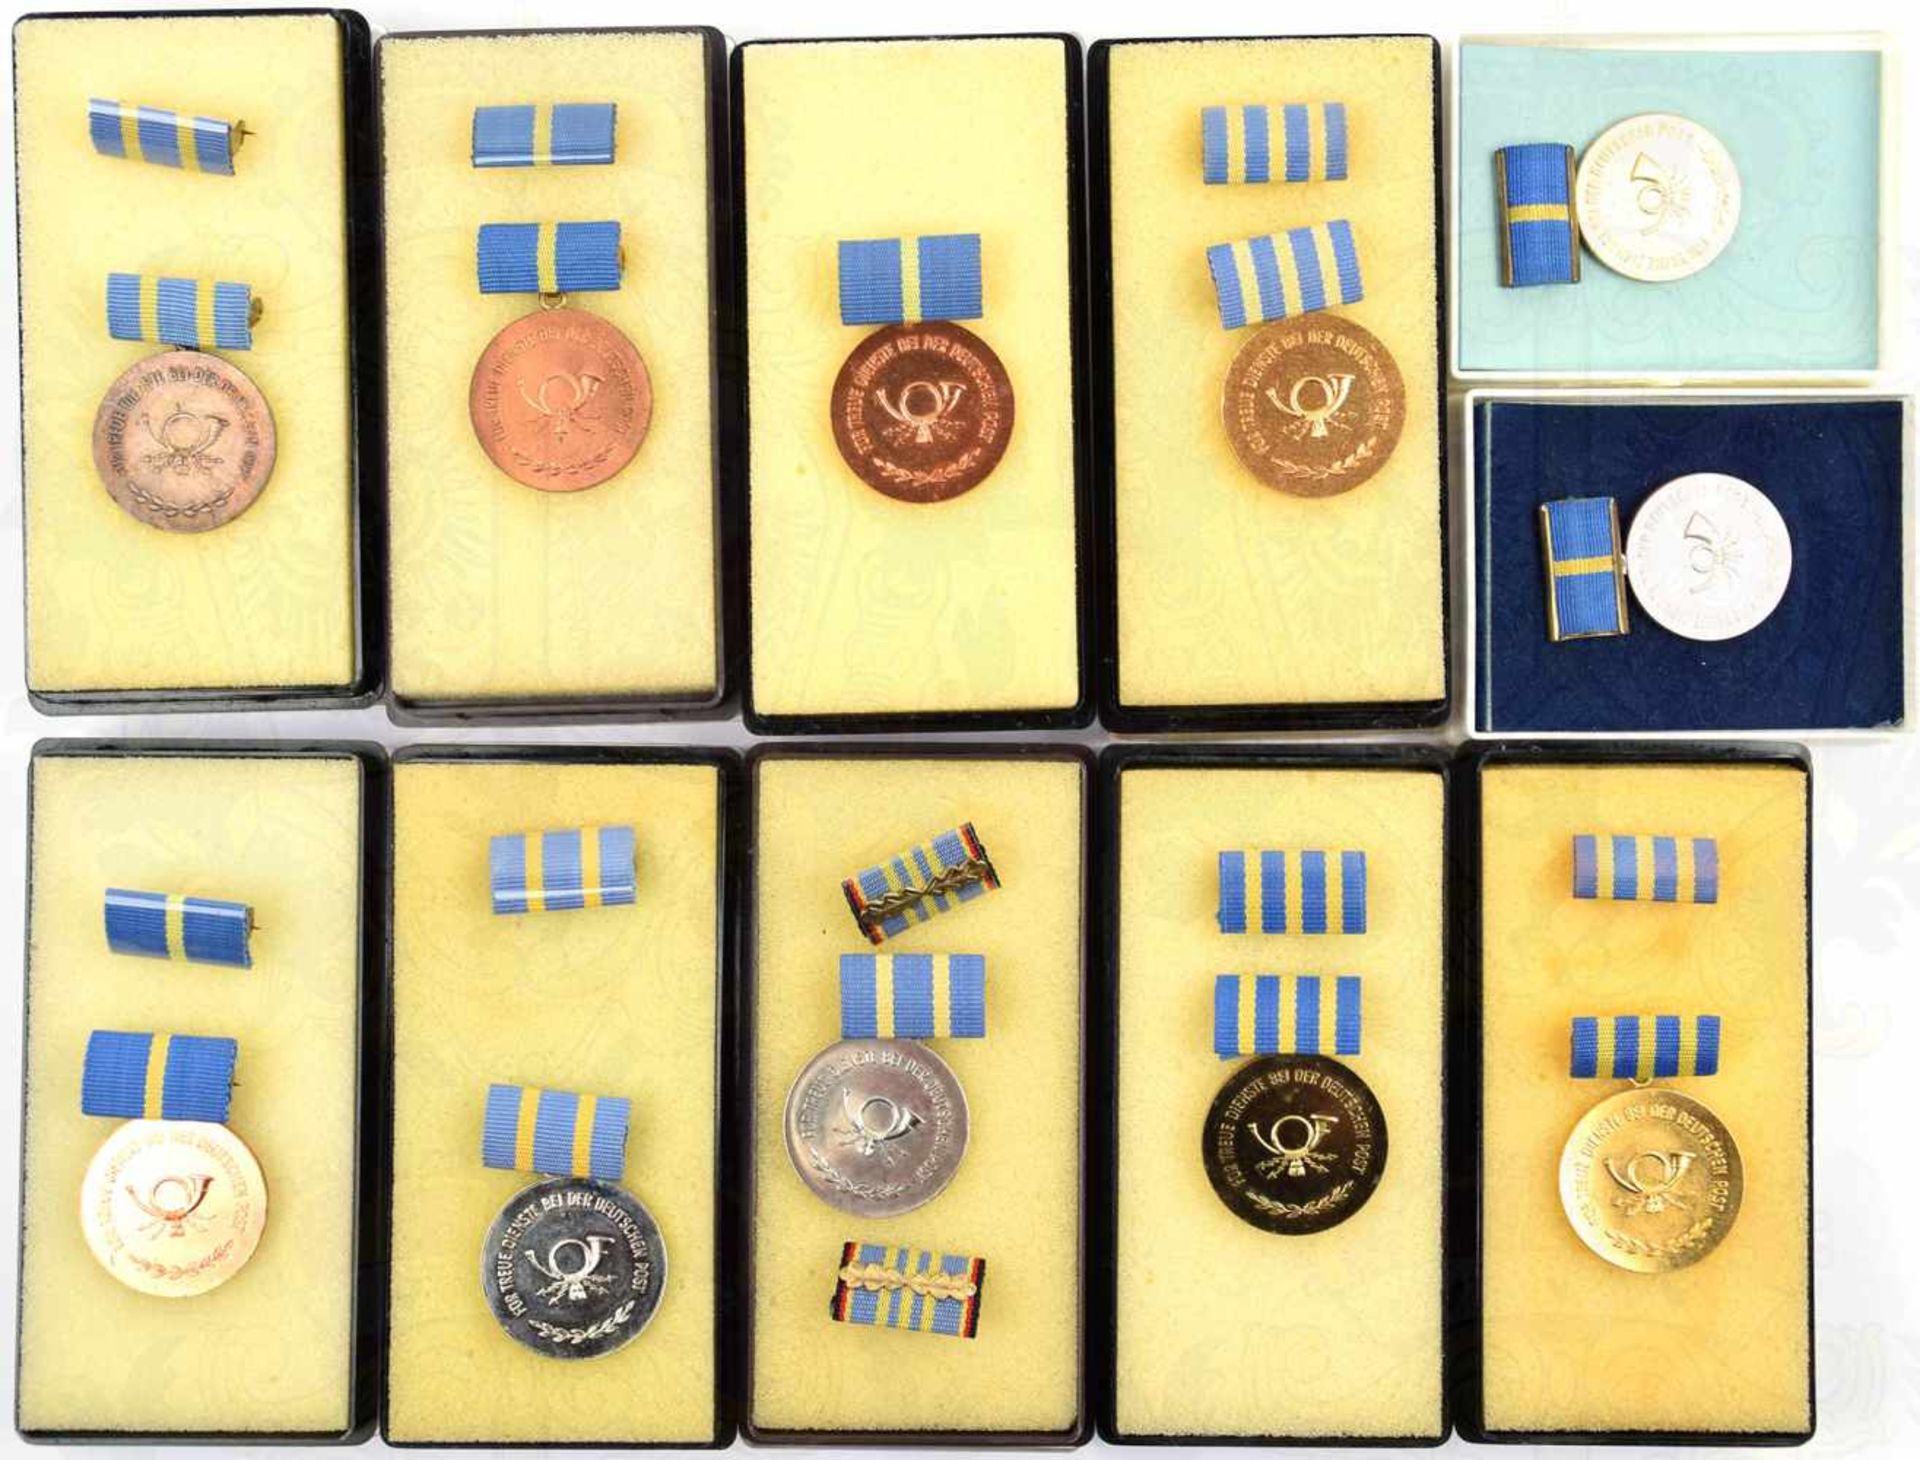 11 EHRENZEICHEN DEUTSCHE POST, Treuedienst-Medaillen, Buntmetall/ Eisen, 2 Variante 1960-1970